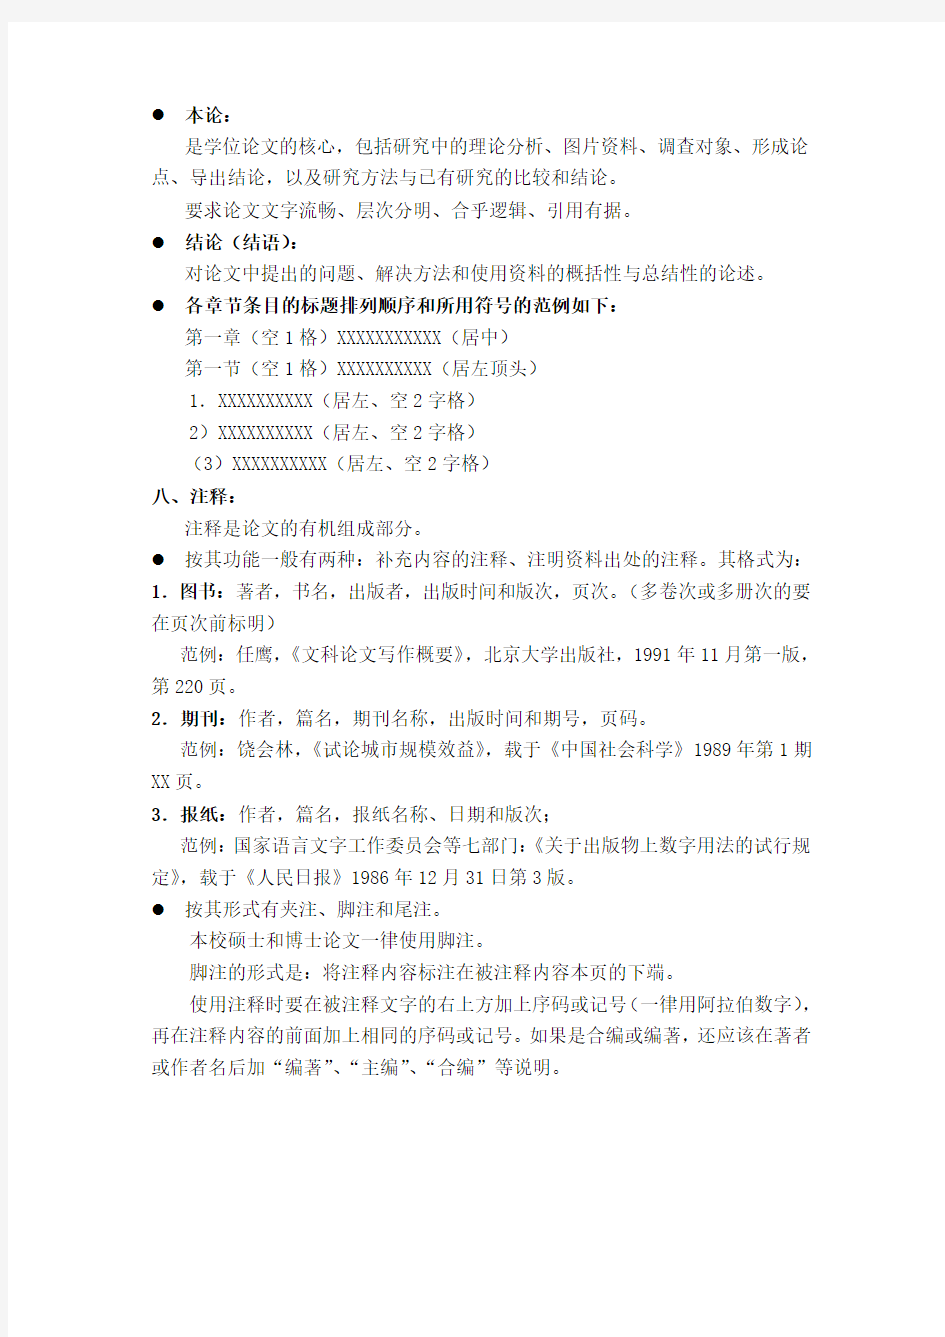 北京电影学院硕士学位论文格式及打印要求